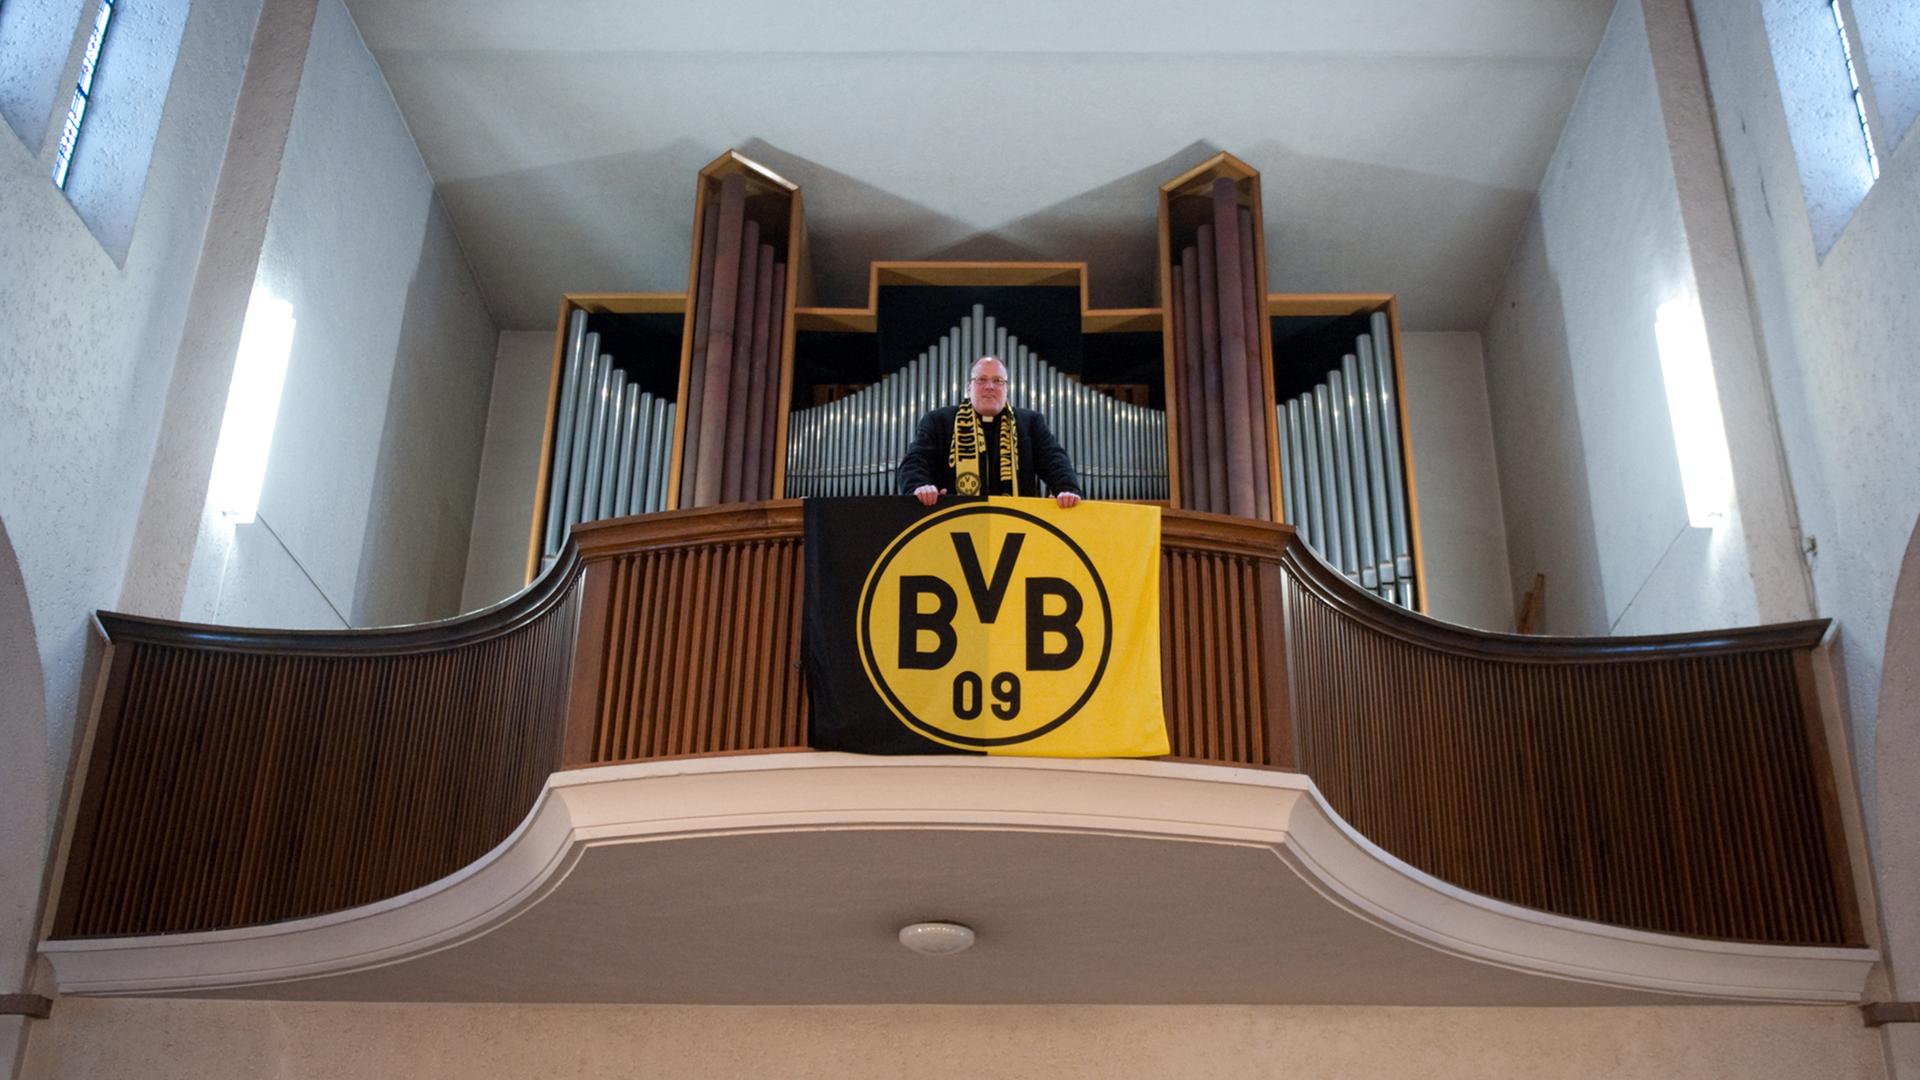 Pfarrer Ansbert Junk steht am Freitag (10.12.2010) in der Dreifaltigkeitskirche in Dortmund auf der Orgelempore, an der eine BVB-Fahne hängt. Dortmund ist ganz oben. Der Siegeskurs der Fußballer von Borussia verleiht der Ruhrgebietsstadt ein völlig neues Selbstvertrauen